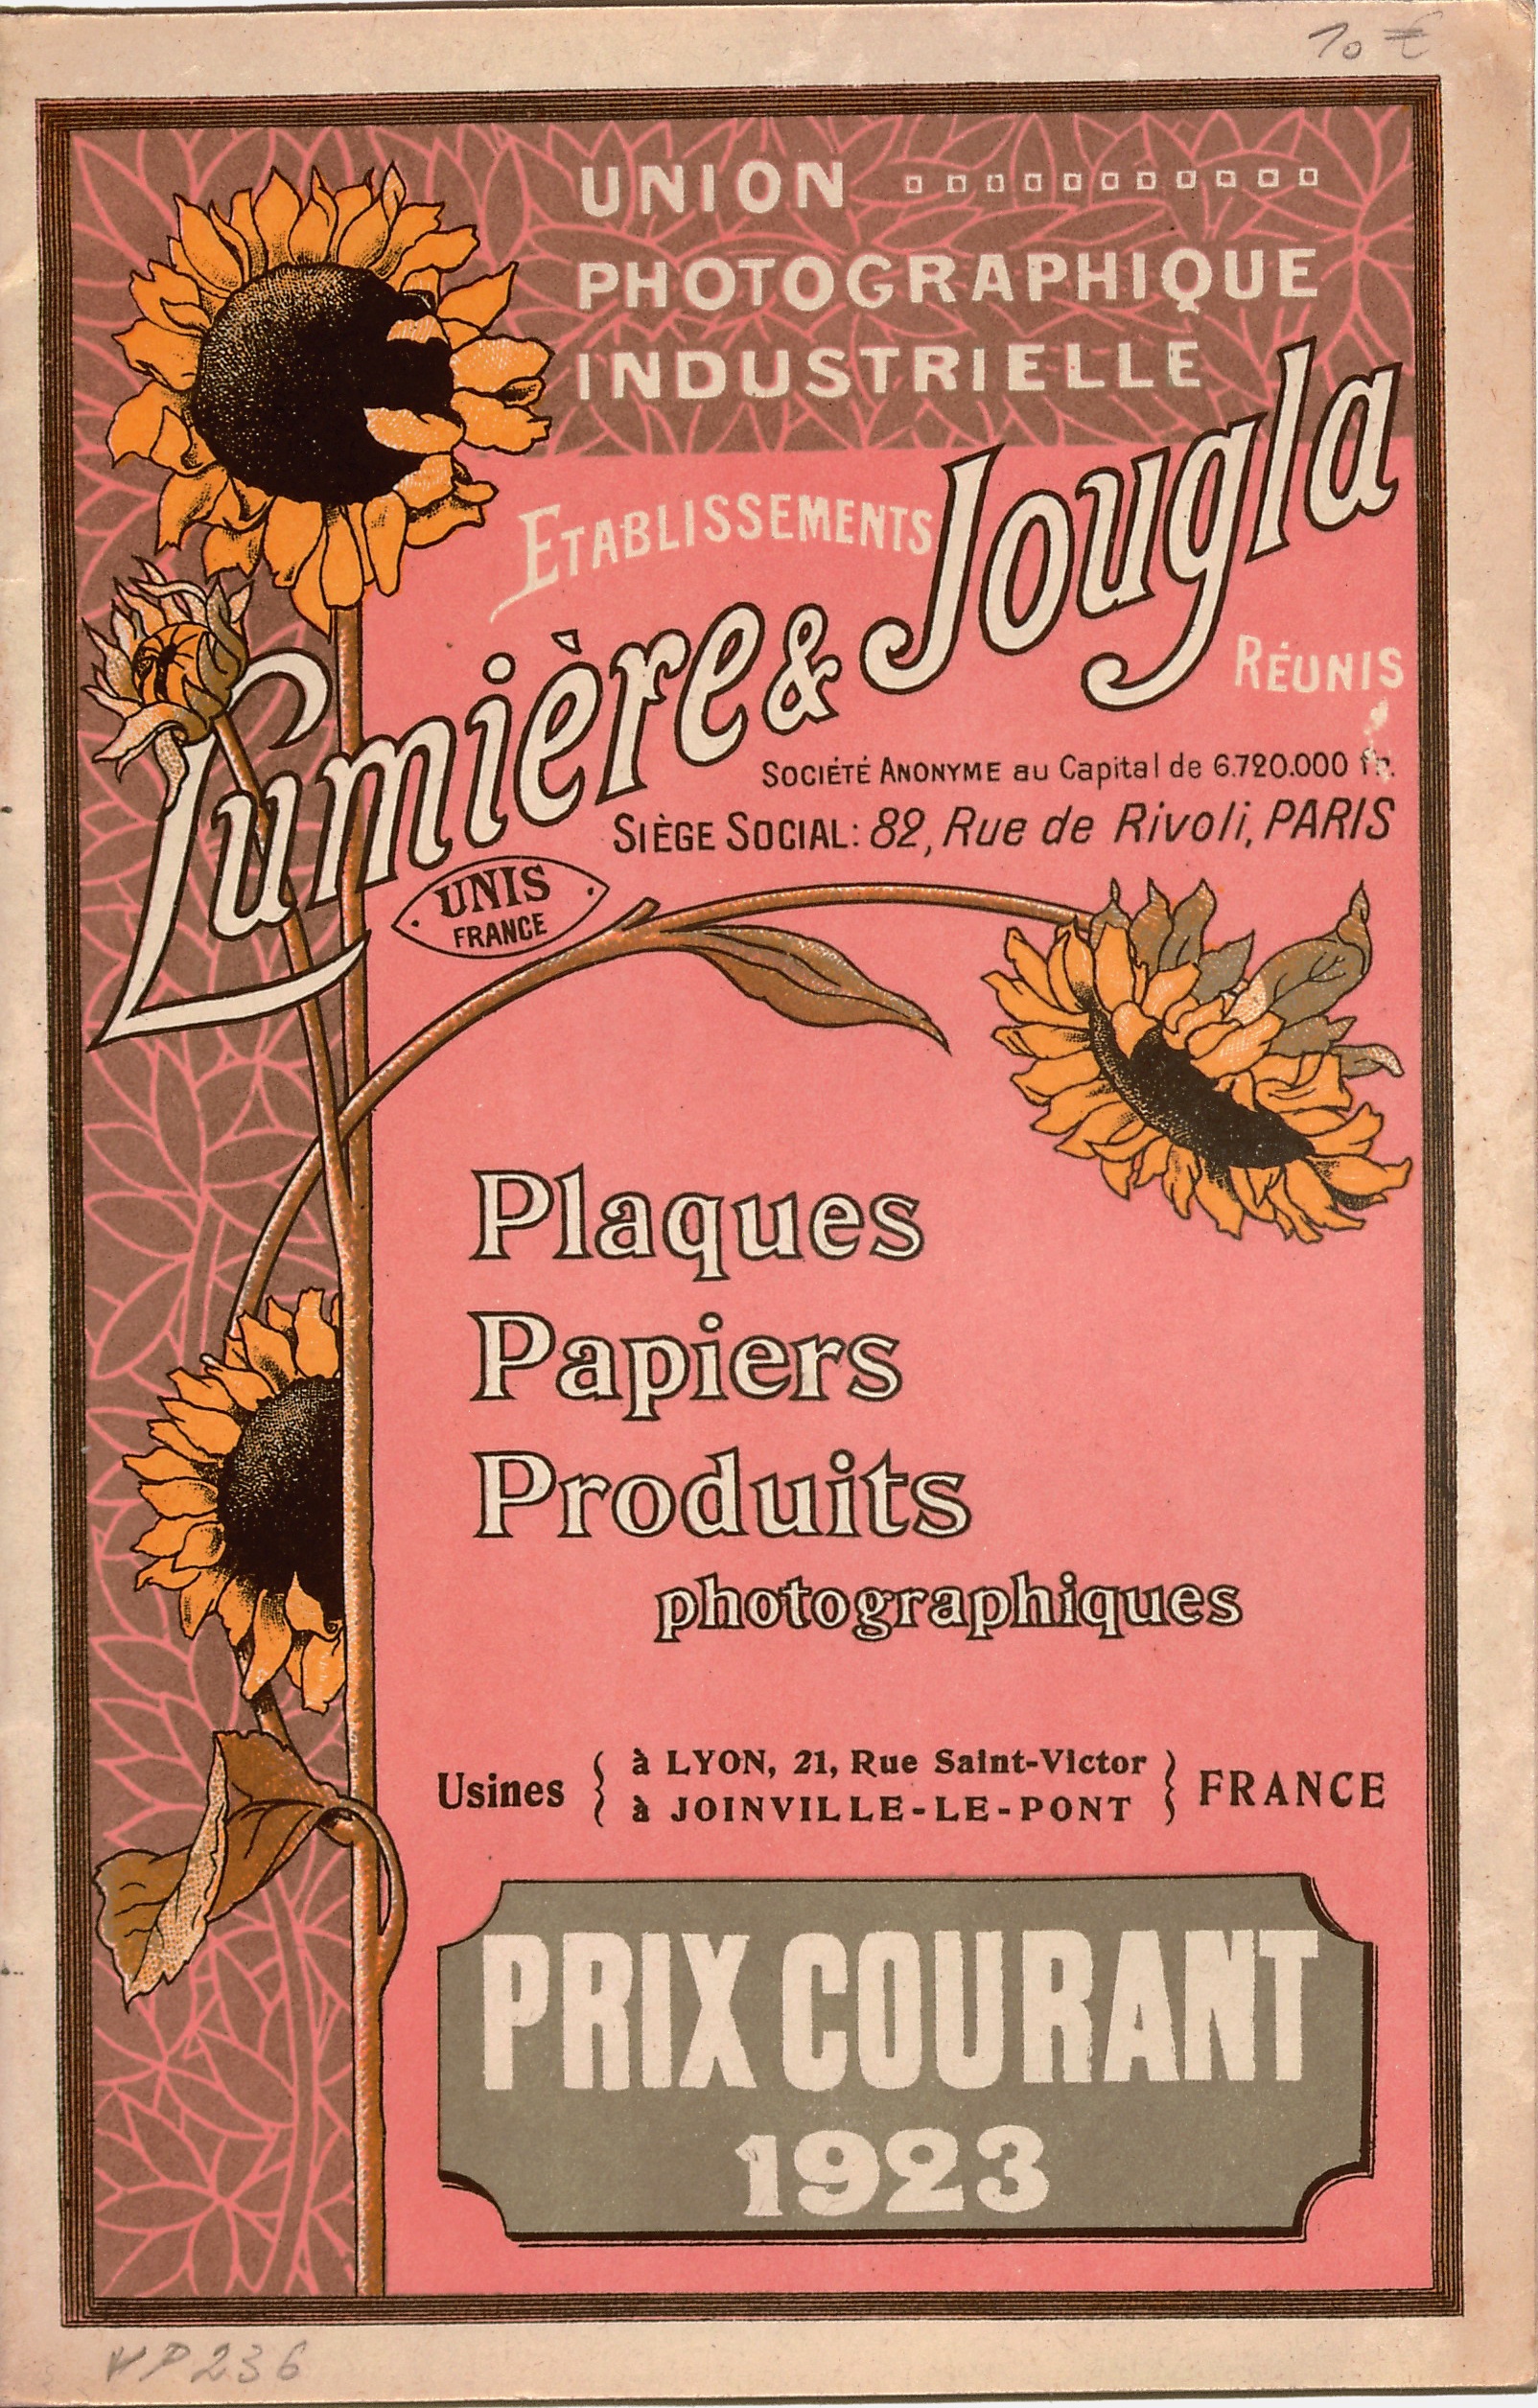 Prix courant Plaques Papiers Produits - 1923